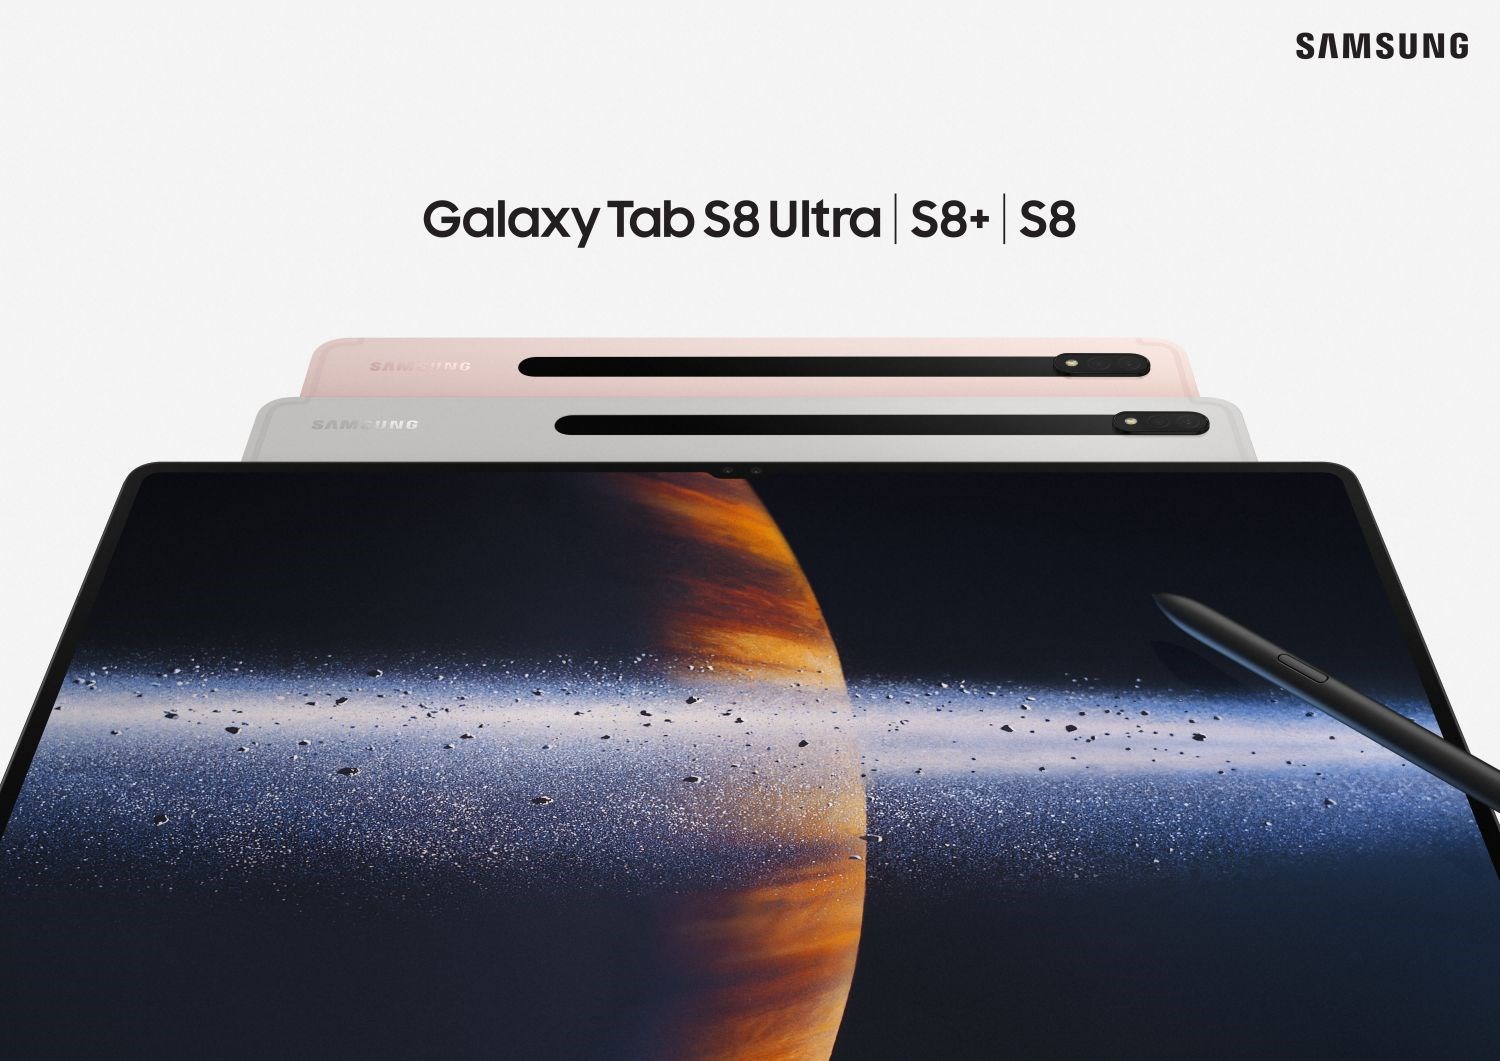 Samsung Galaxy Tab S8 serisi tanıtıldı: Özellikleri ve fiyatı